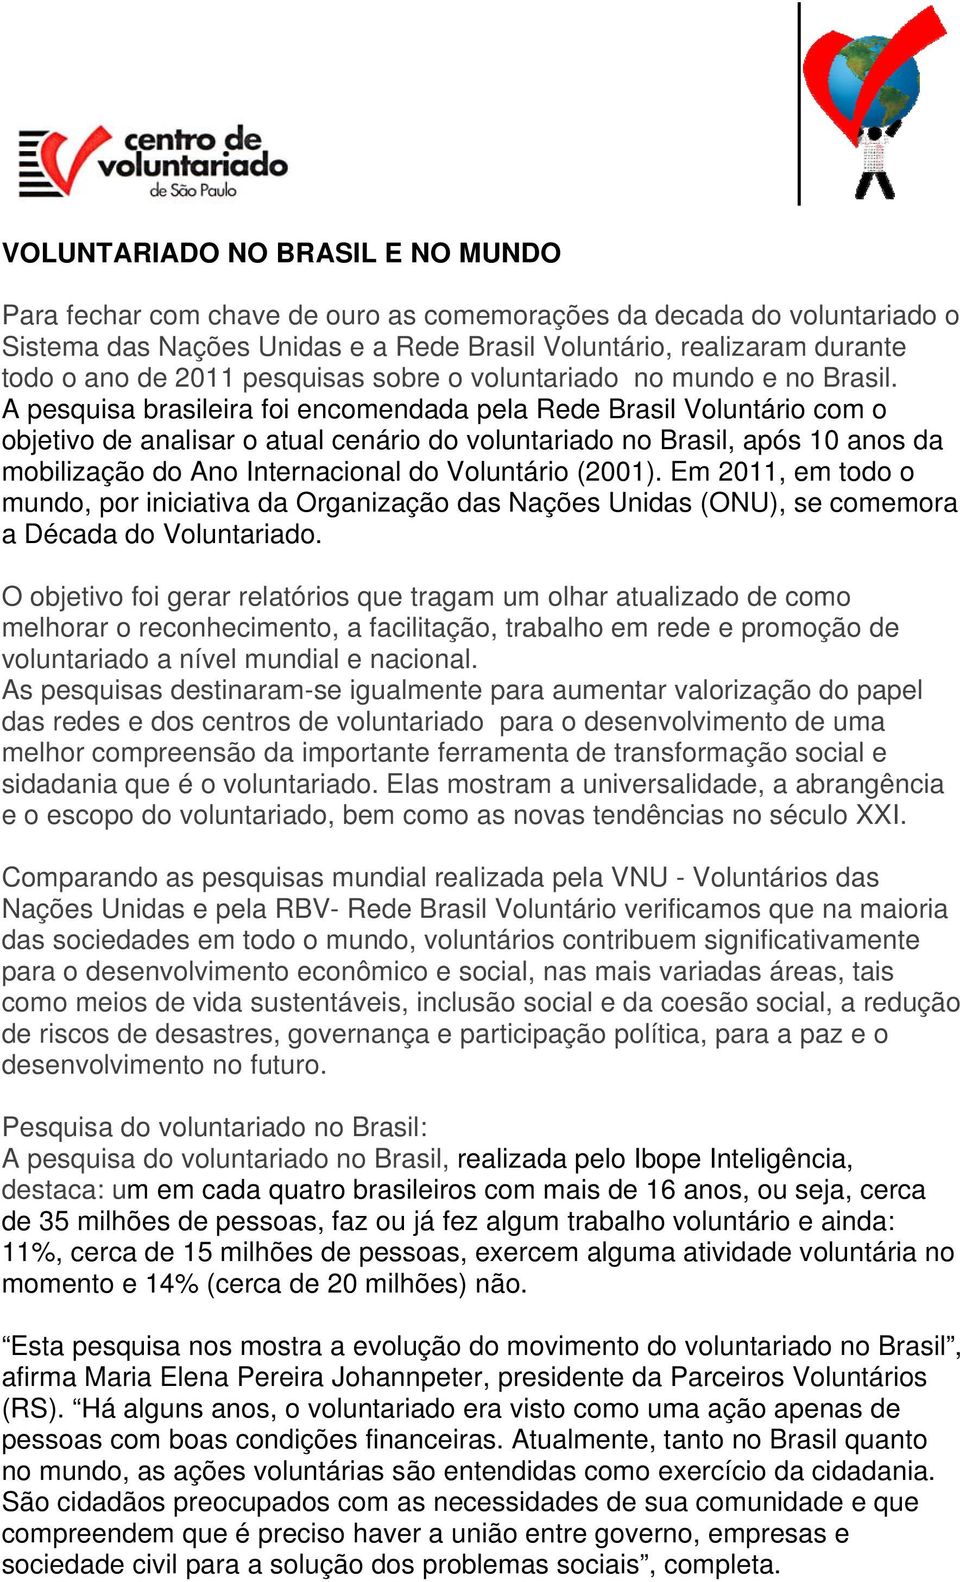 A pesquisa brasileira foi encomendada pela Rede Brasil Voluntário com o objetivo de analisar o atual cenário do voluntariado no Brasil, após 10 anos da mobilização do Ano Internacional do Voluntário